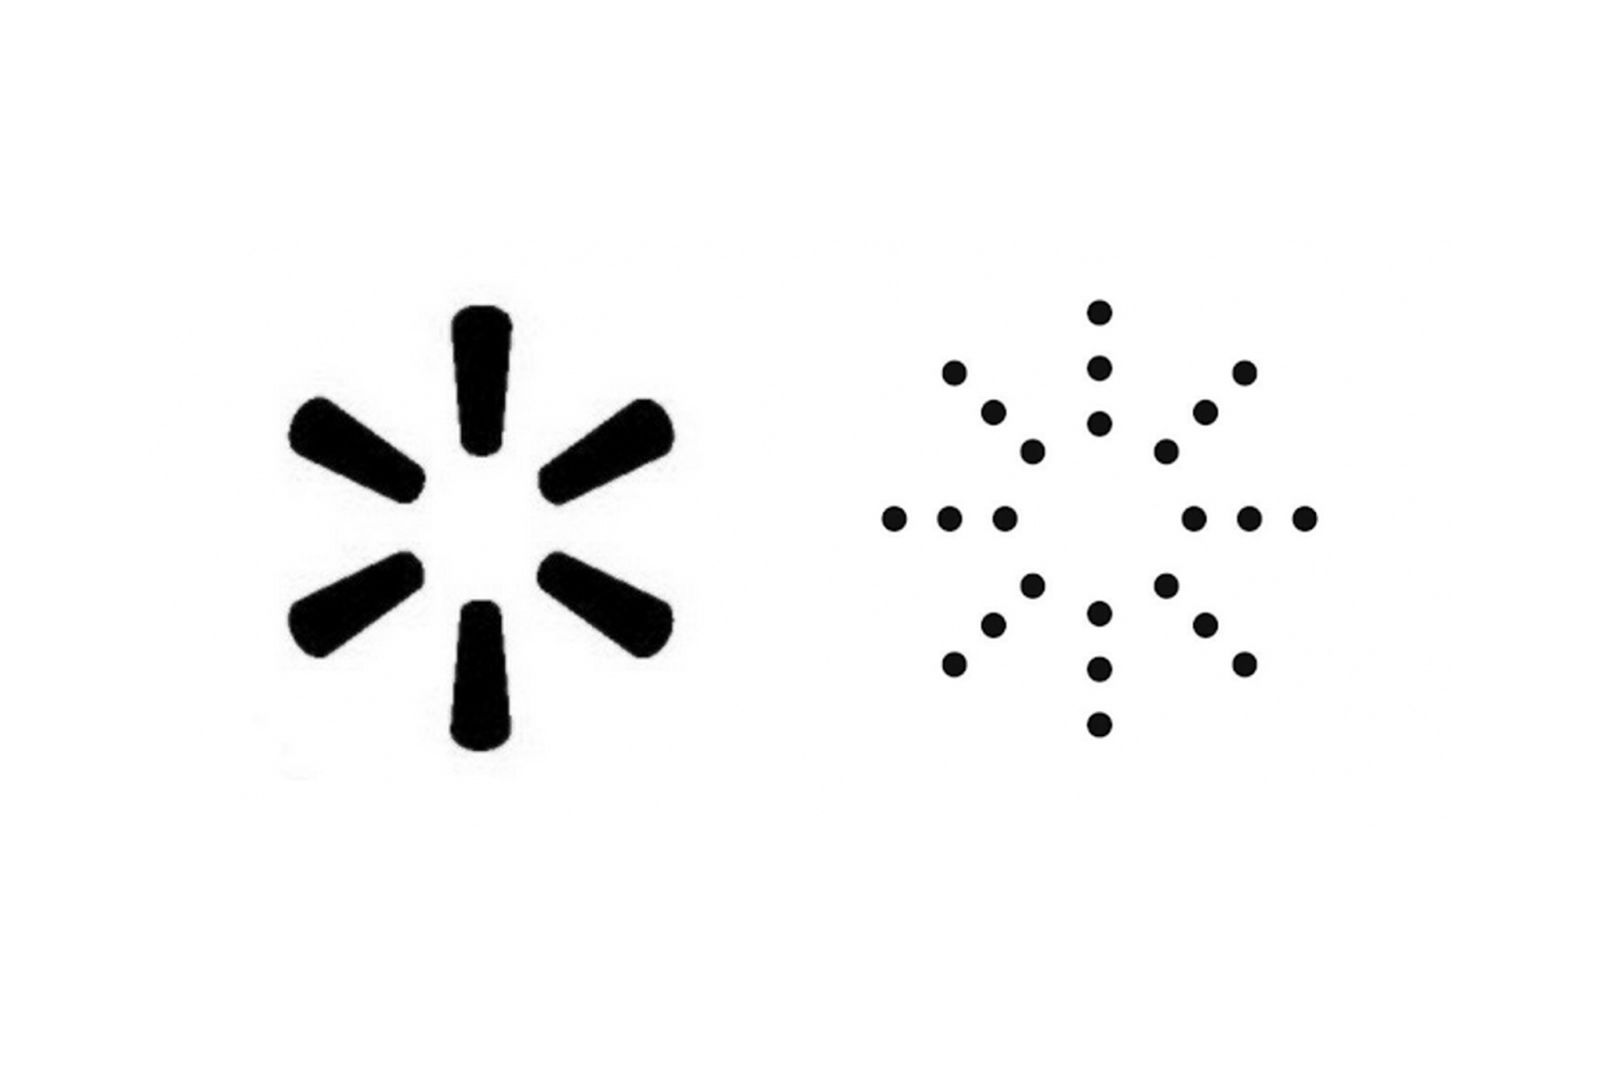 kanye-west-yeezy-walmart-logo-dispute-01